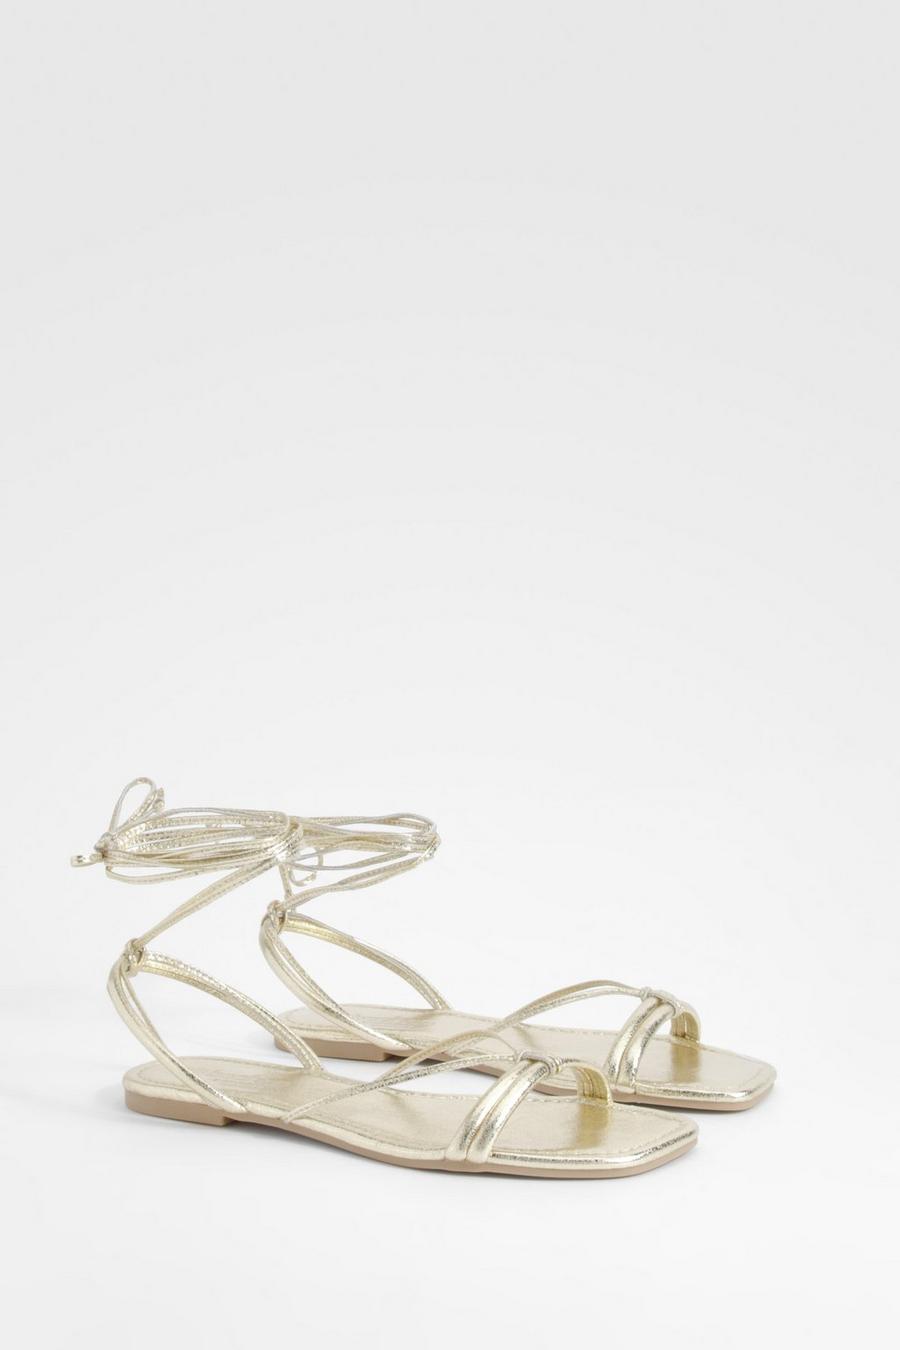 Sandali a calzata ampia metallizzati con laccetti alla caviglia, Gold